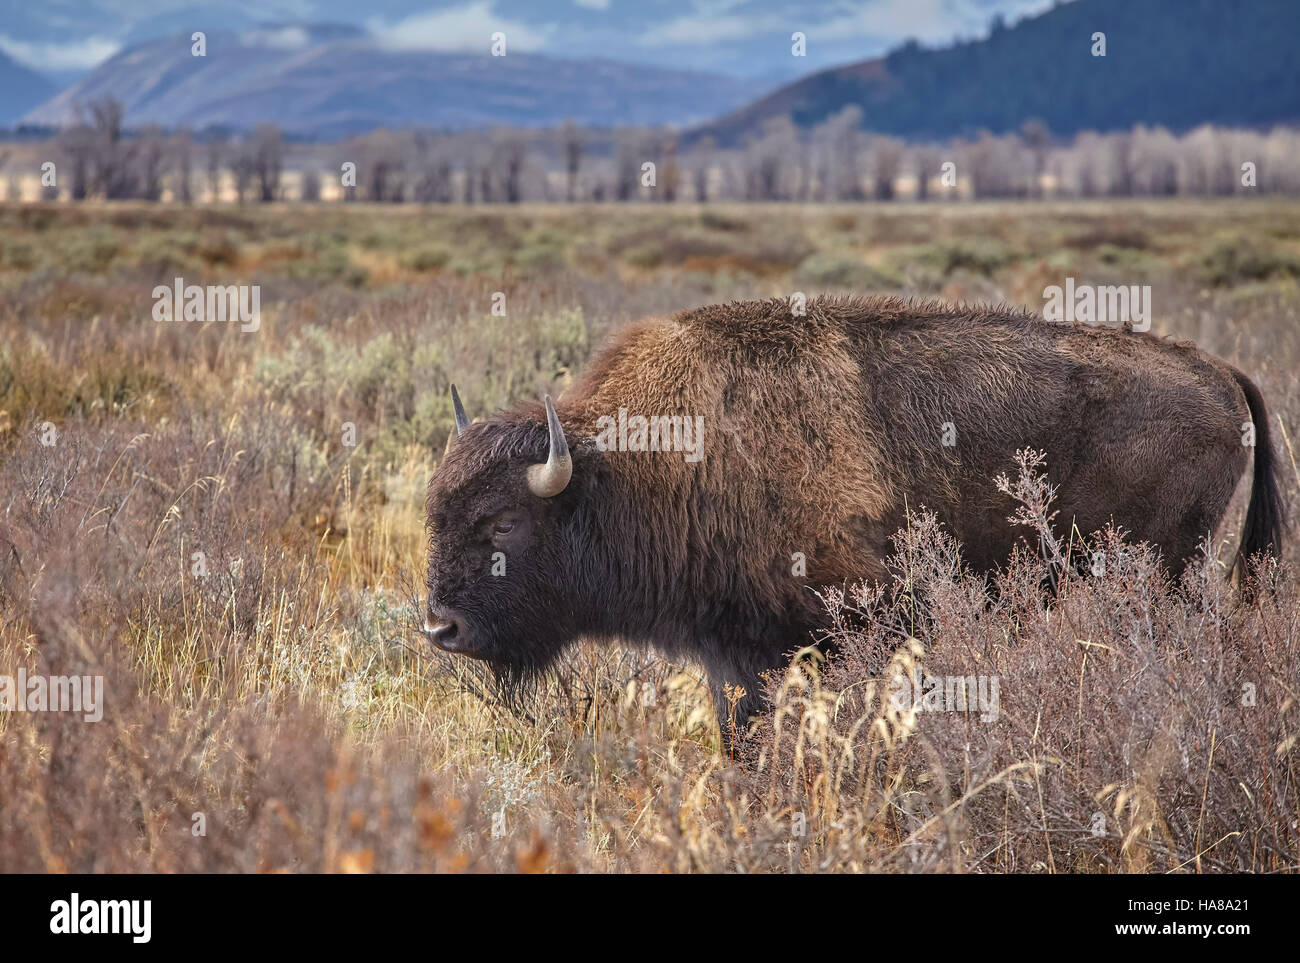 American el bisonte (Bison bison) pastoreo en el parque nacional Grand Teton, Wyoming, Estados Unidos. Foto de stock